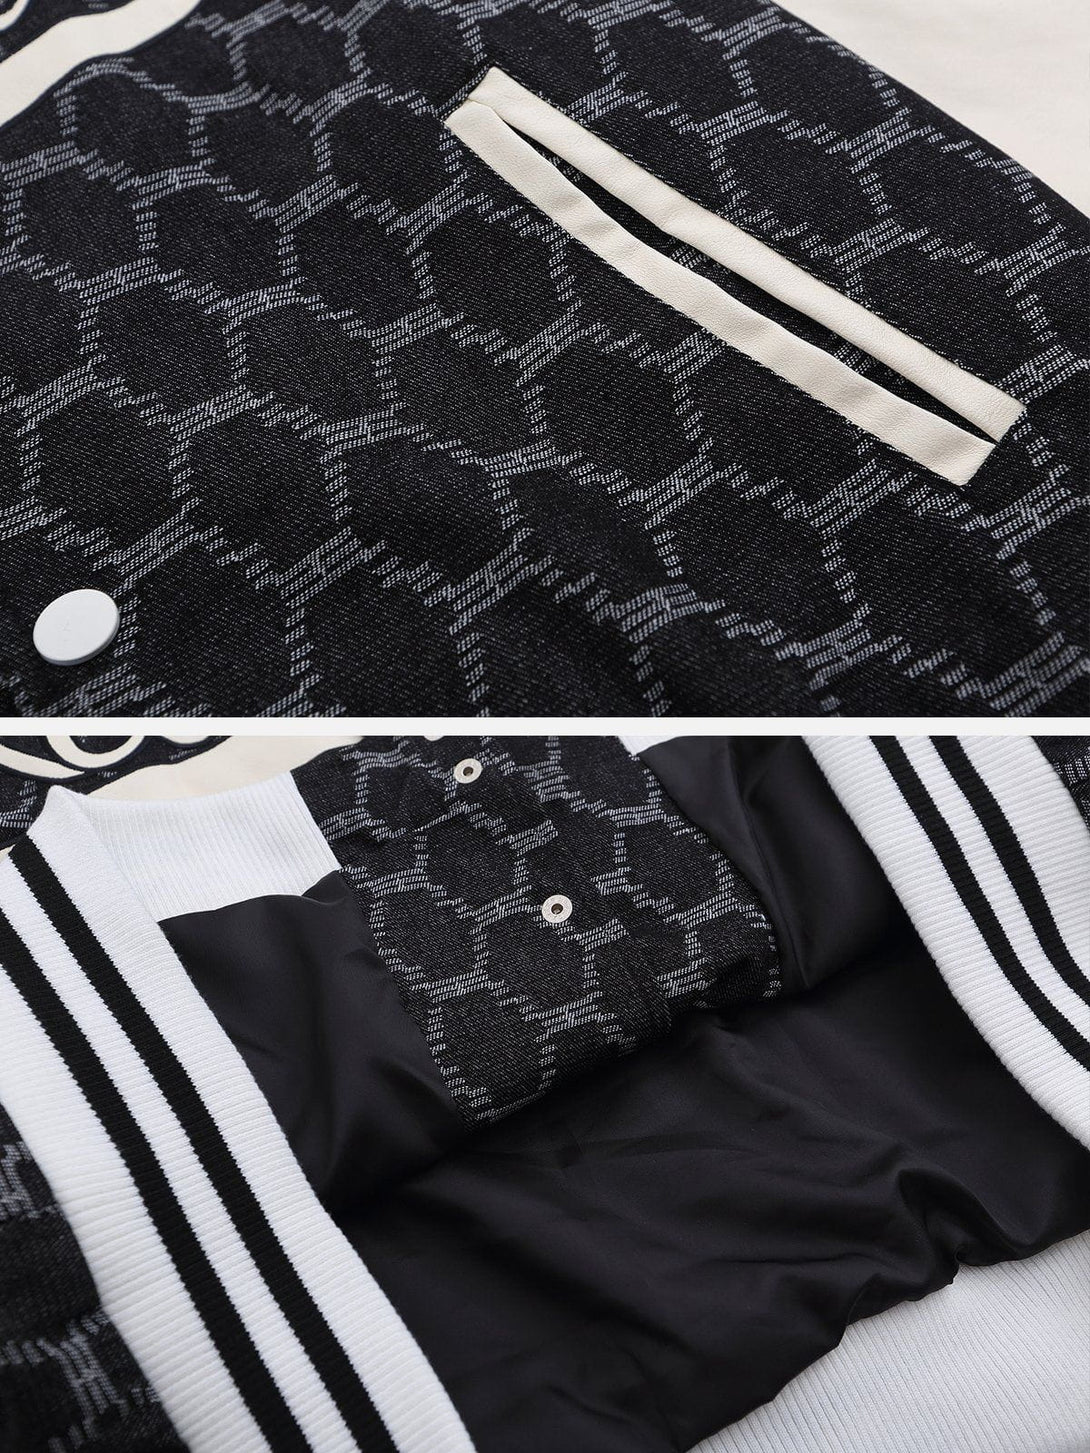 Ellesey - Letter Grid Patchwork Jacket- Streetwear Fashion - ellesey.com